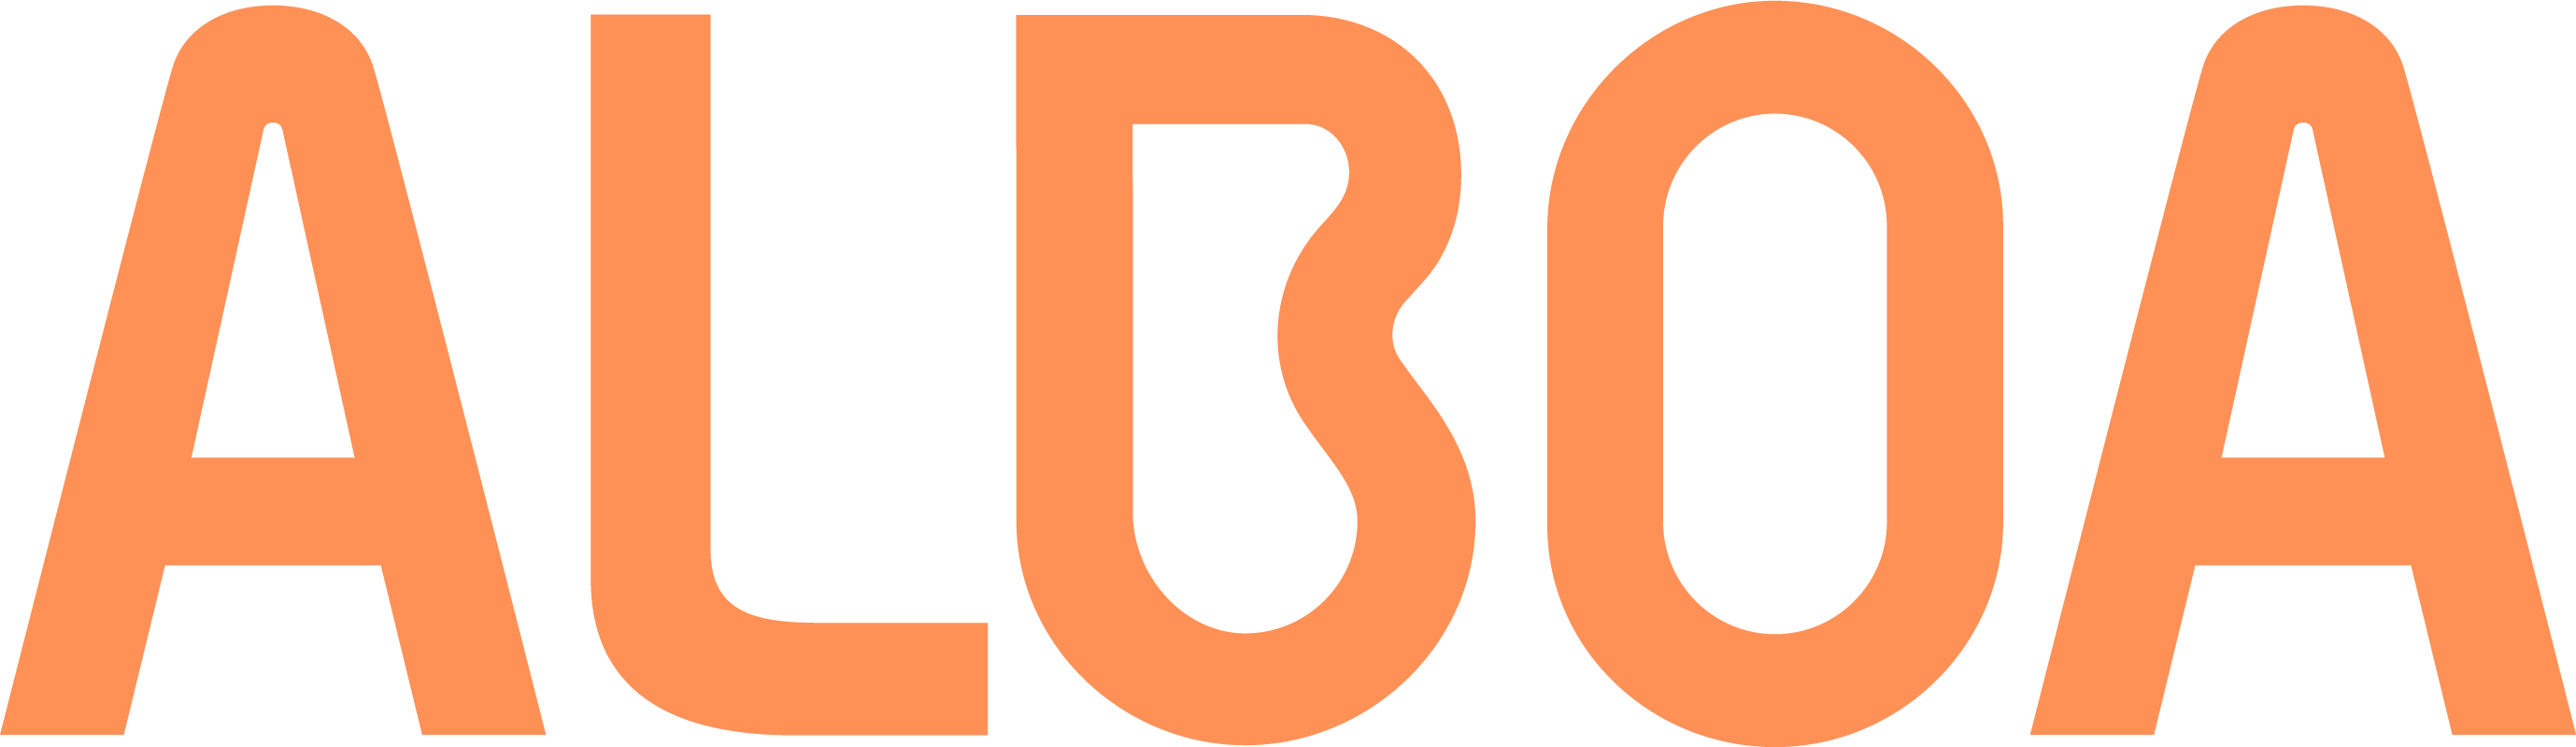 Alboa (Almen Boligorganisation Aarhus) logo i orange